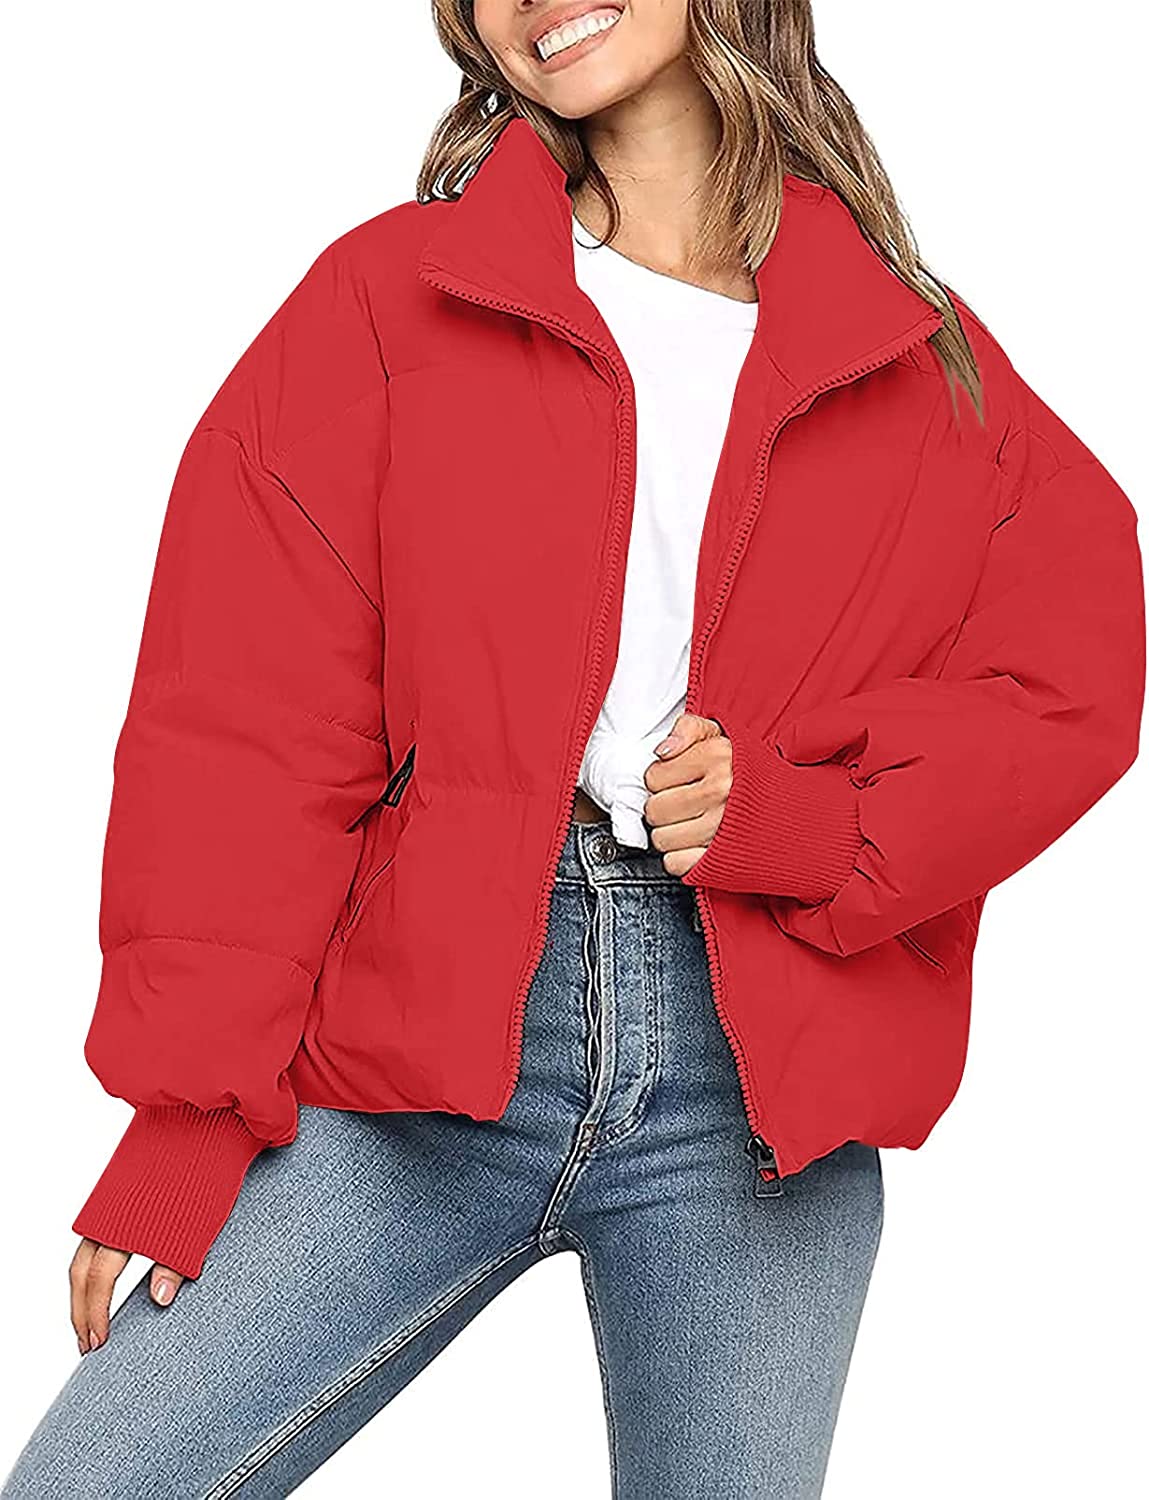  MEROKEETY Women's Winter Cropped Puffer Jacket Long